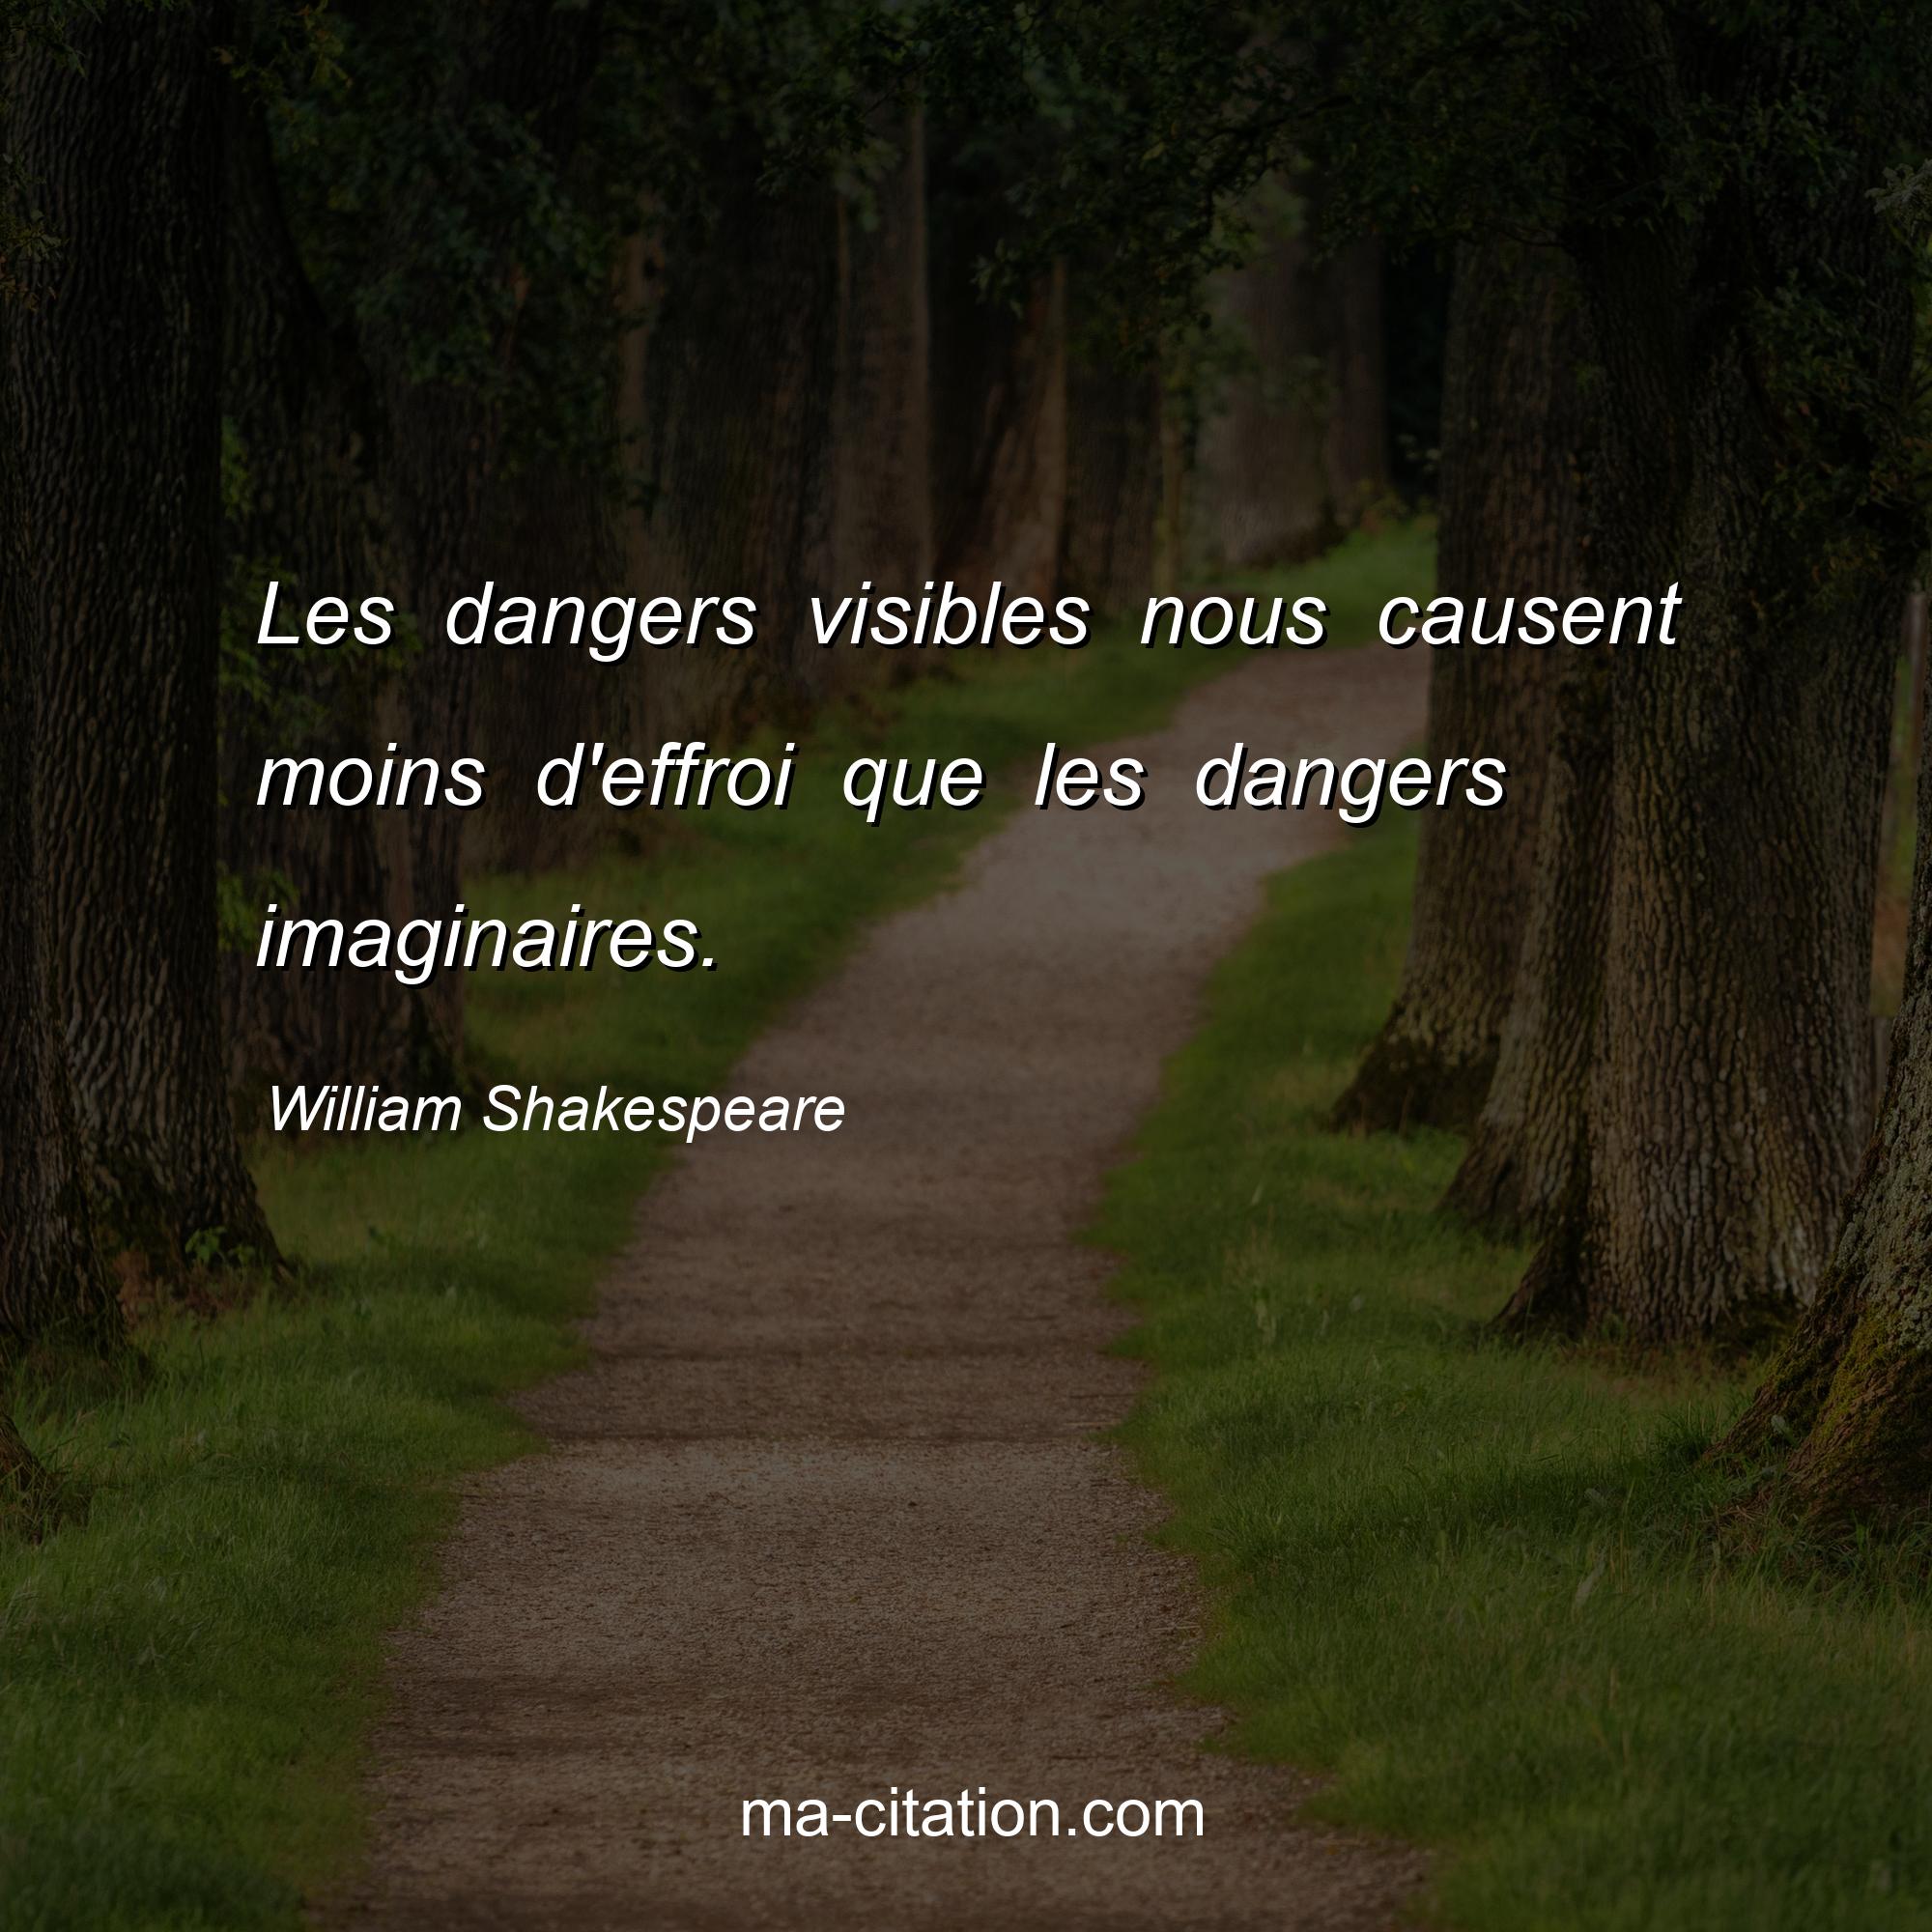 William Shakespeare : Les dangers visibles nous causent moins d'effroi que les dangers imaginaires.